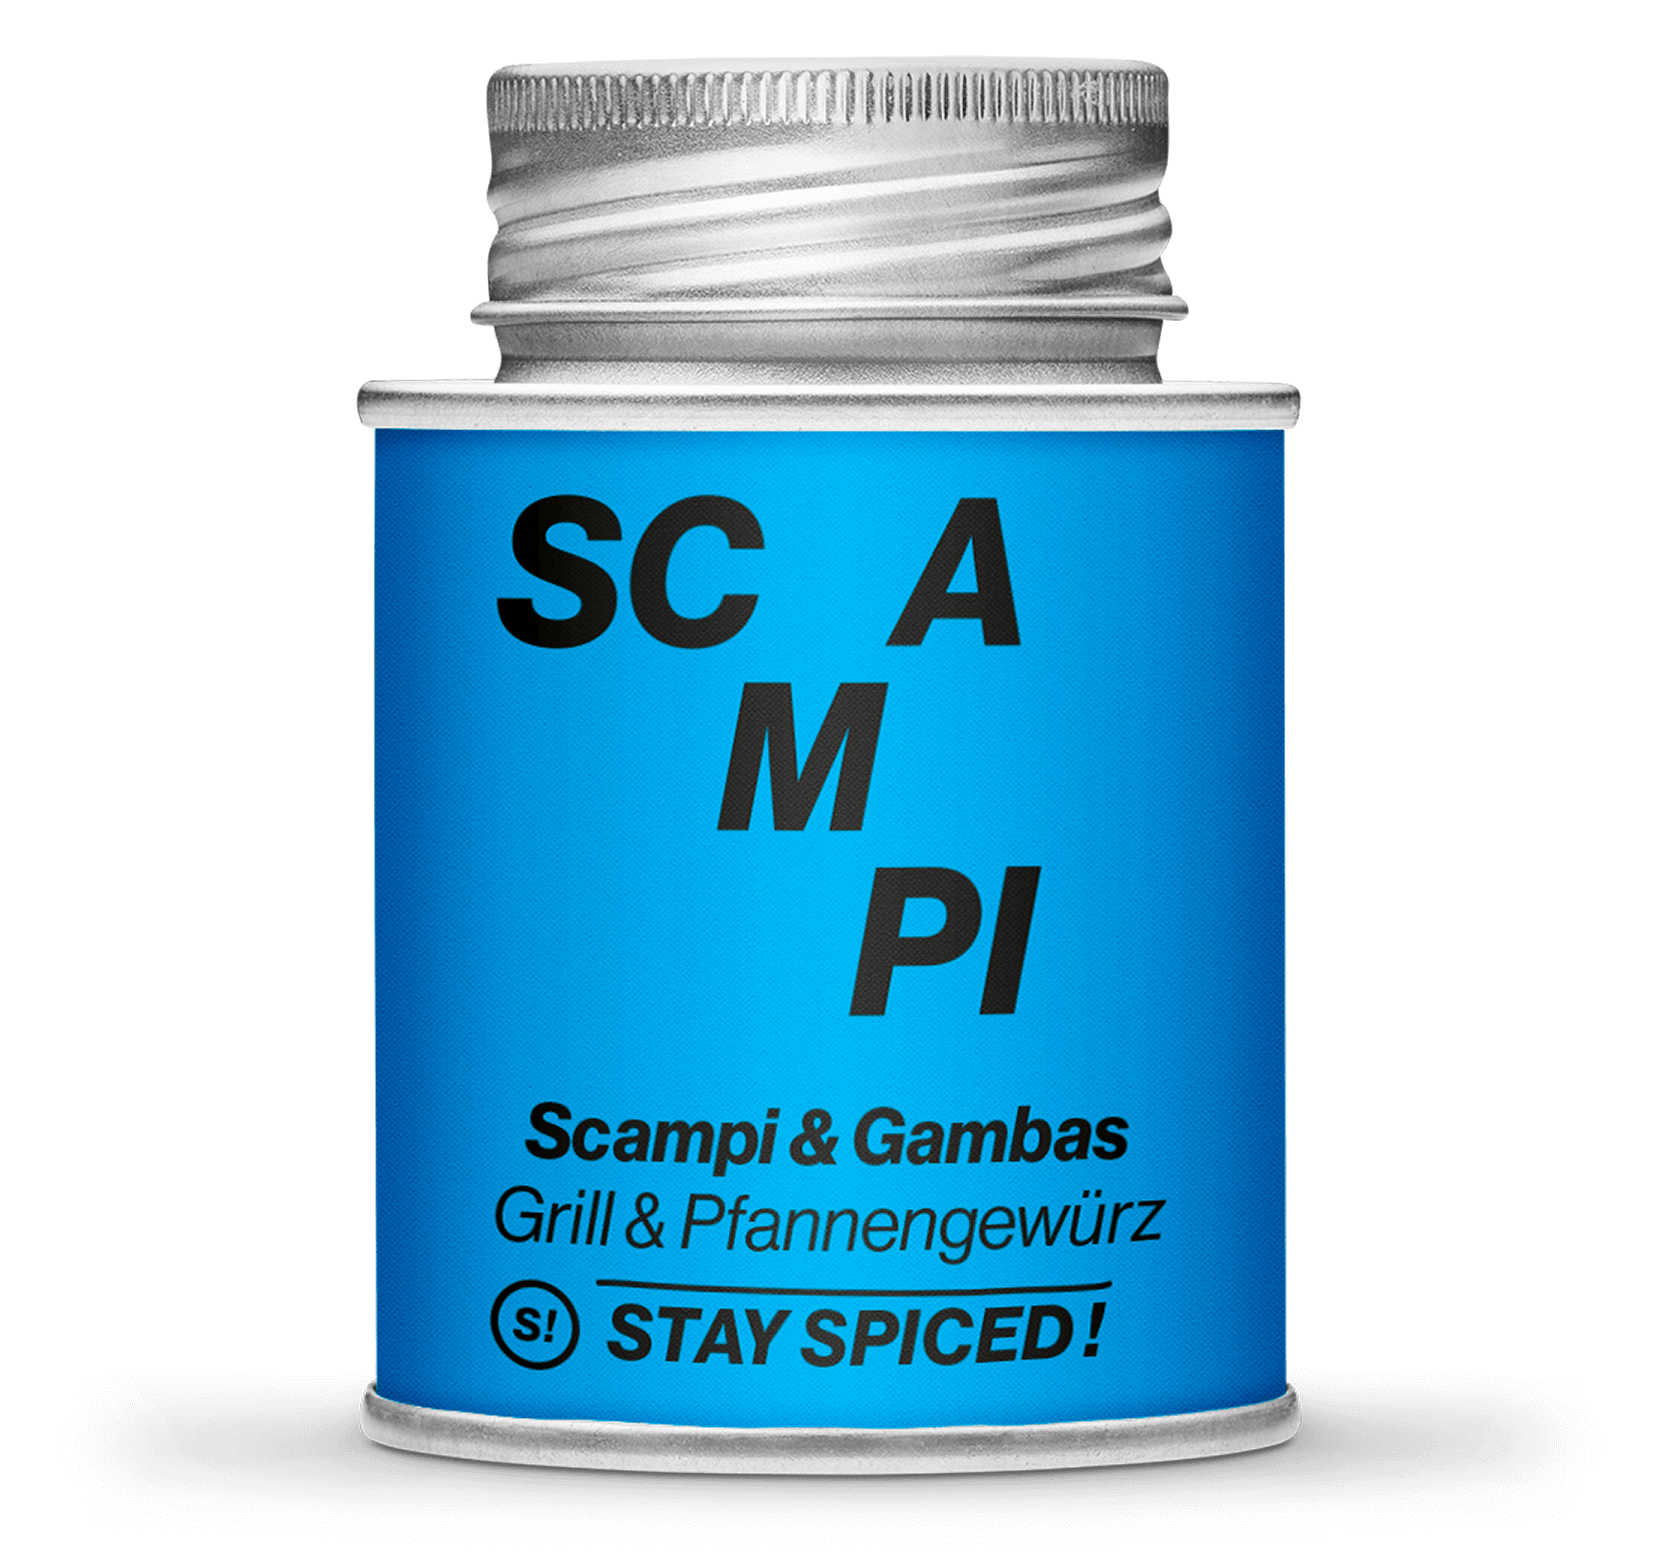 Scampi & Gambas, Grill & Pfannengewürz 170ml Schraubdose